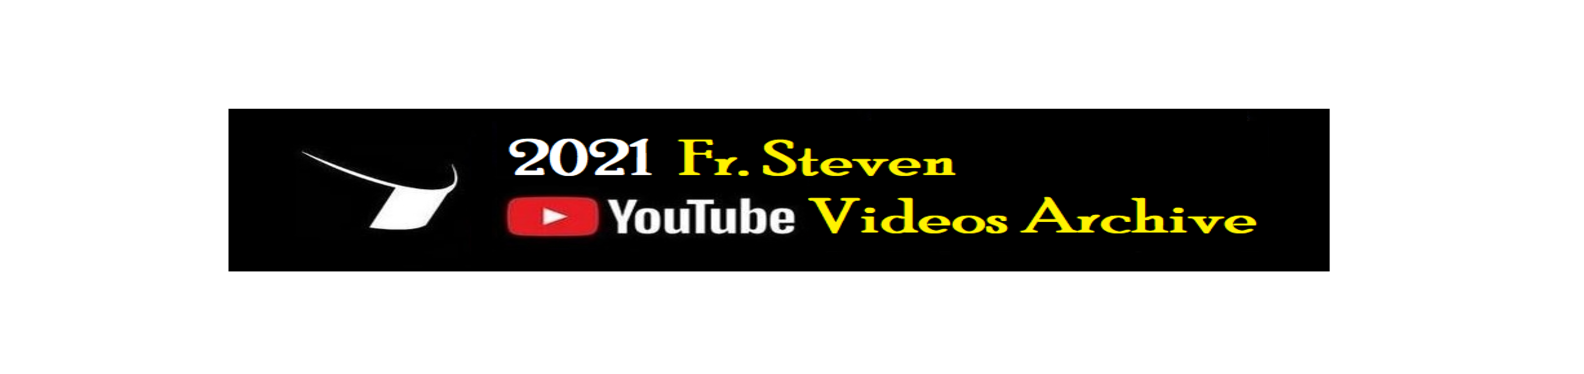 2021 fr steven youtube videos archive banner